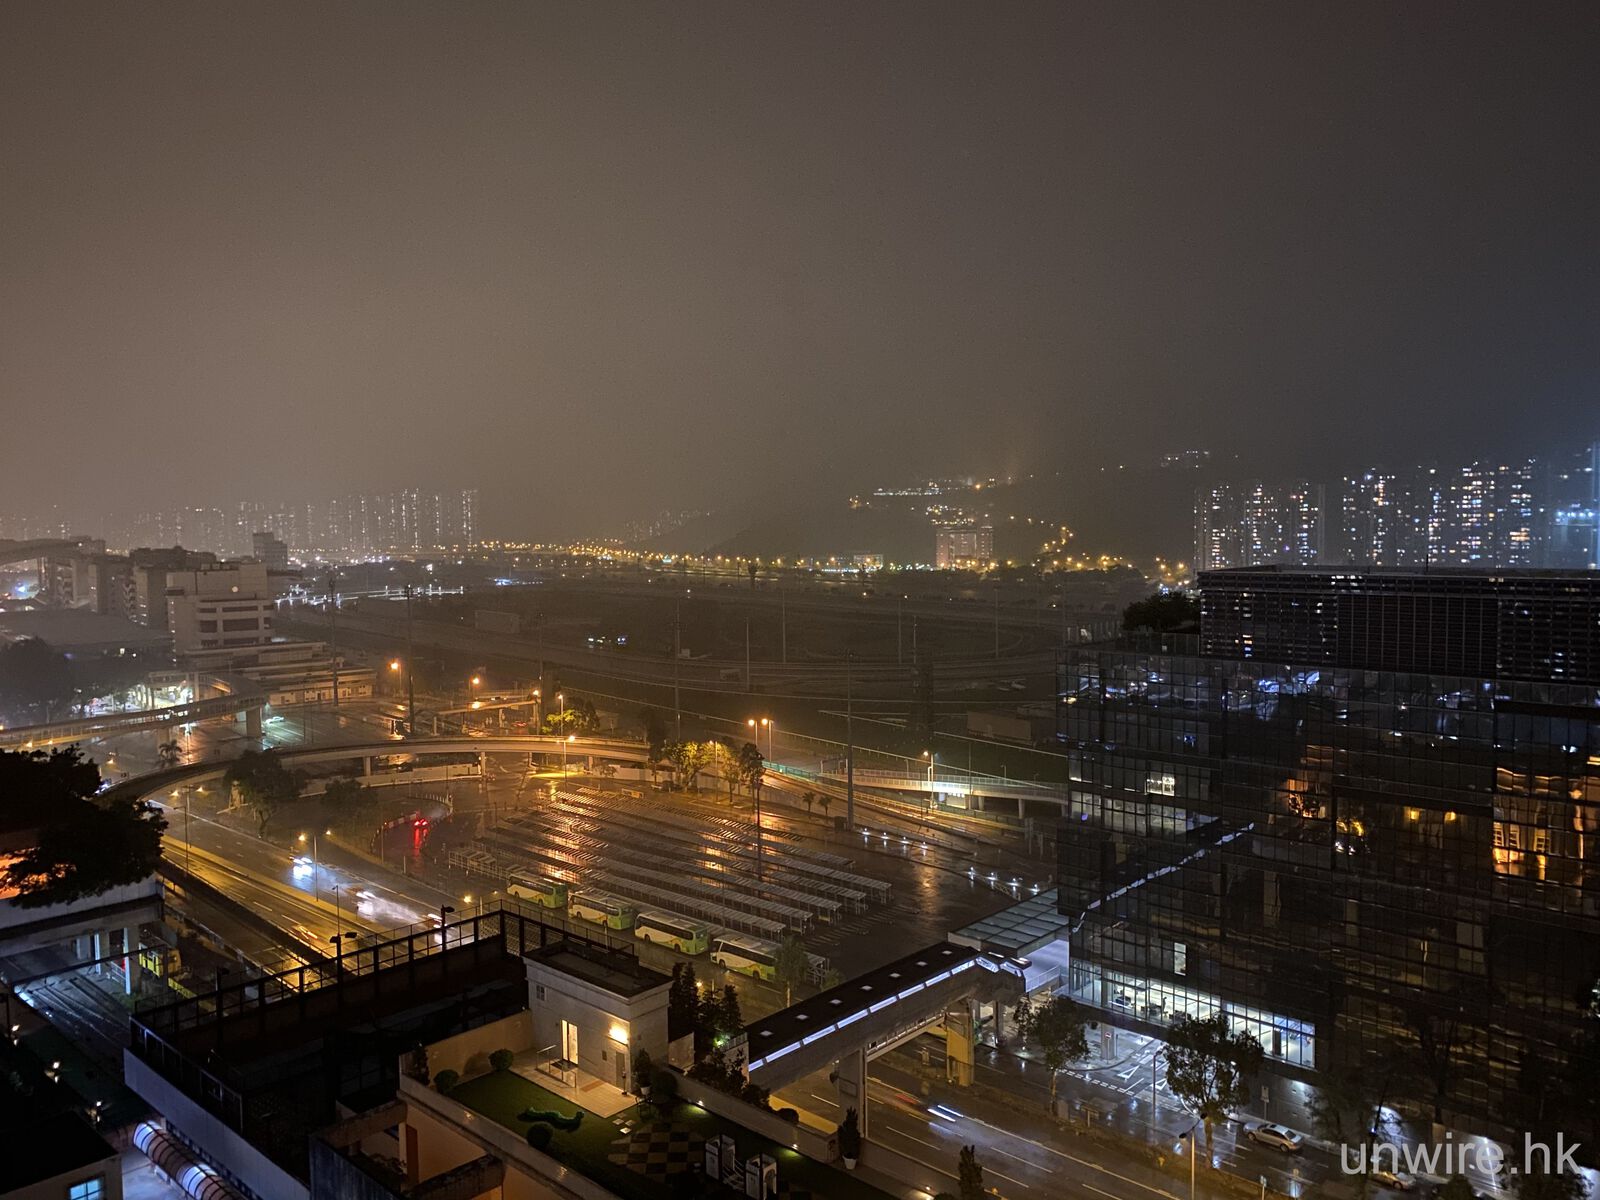 評測 Iphone 11 Deep Fusion 夜景 逆光影相呈現更多細節 香港unwire Hk